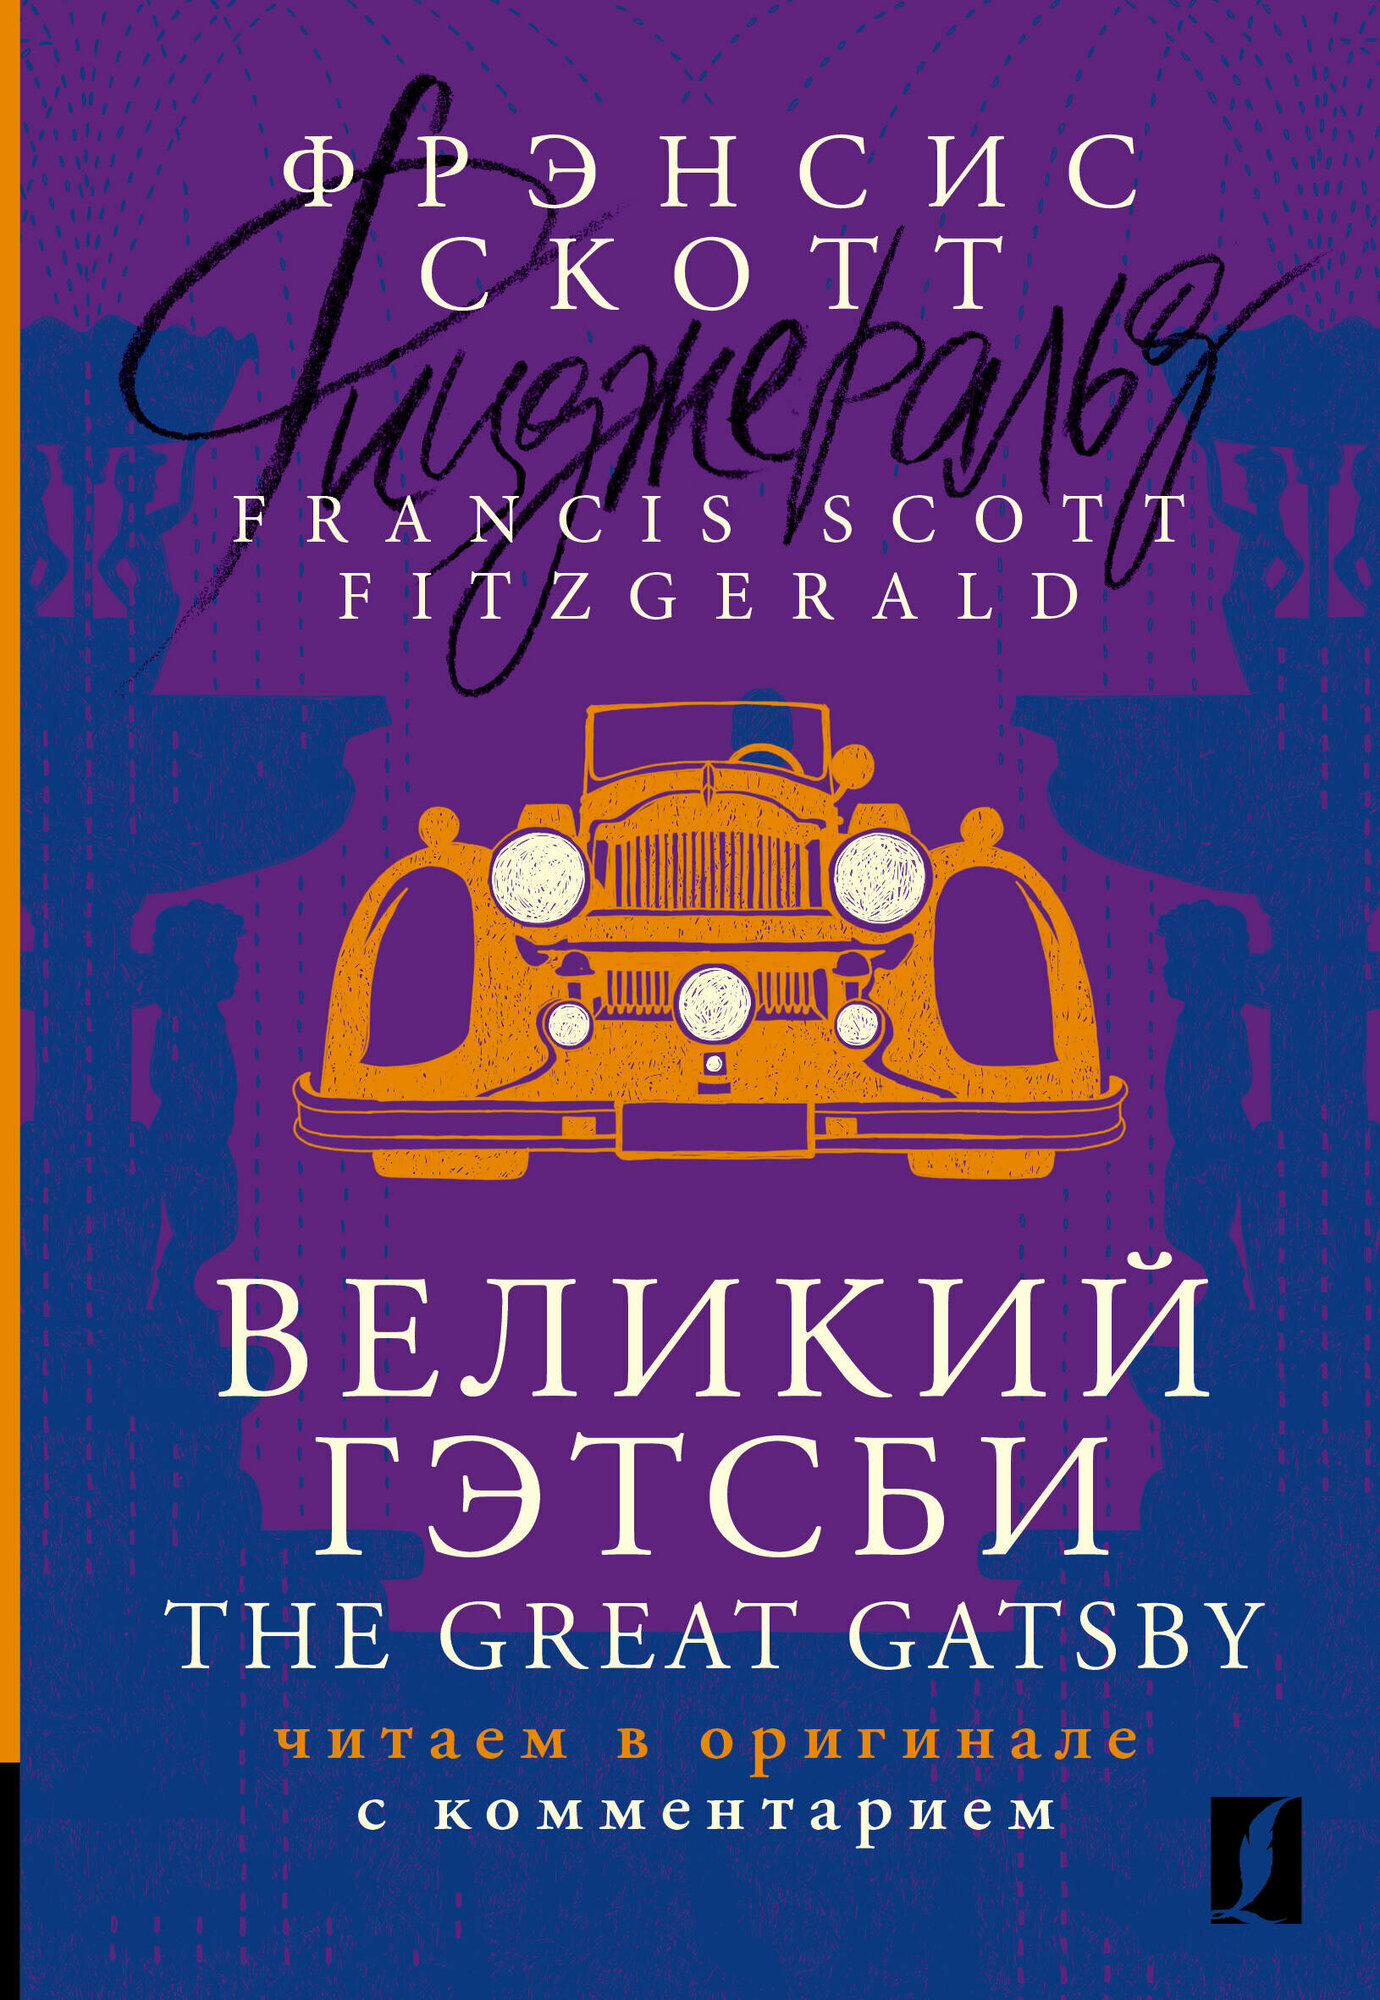 Великий Гэтсби = The Great Gatsby: читаем в оригинале с комментарием - фото №2